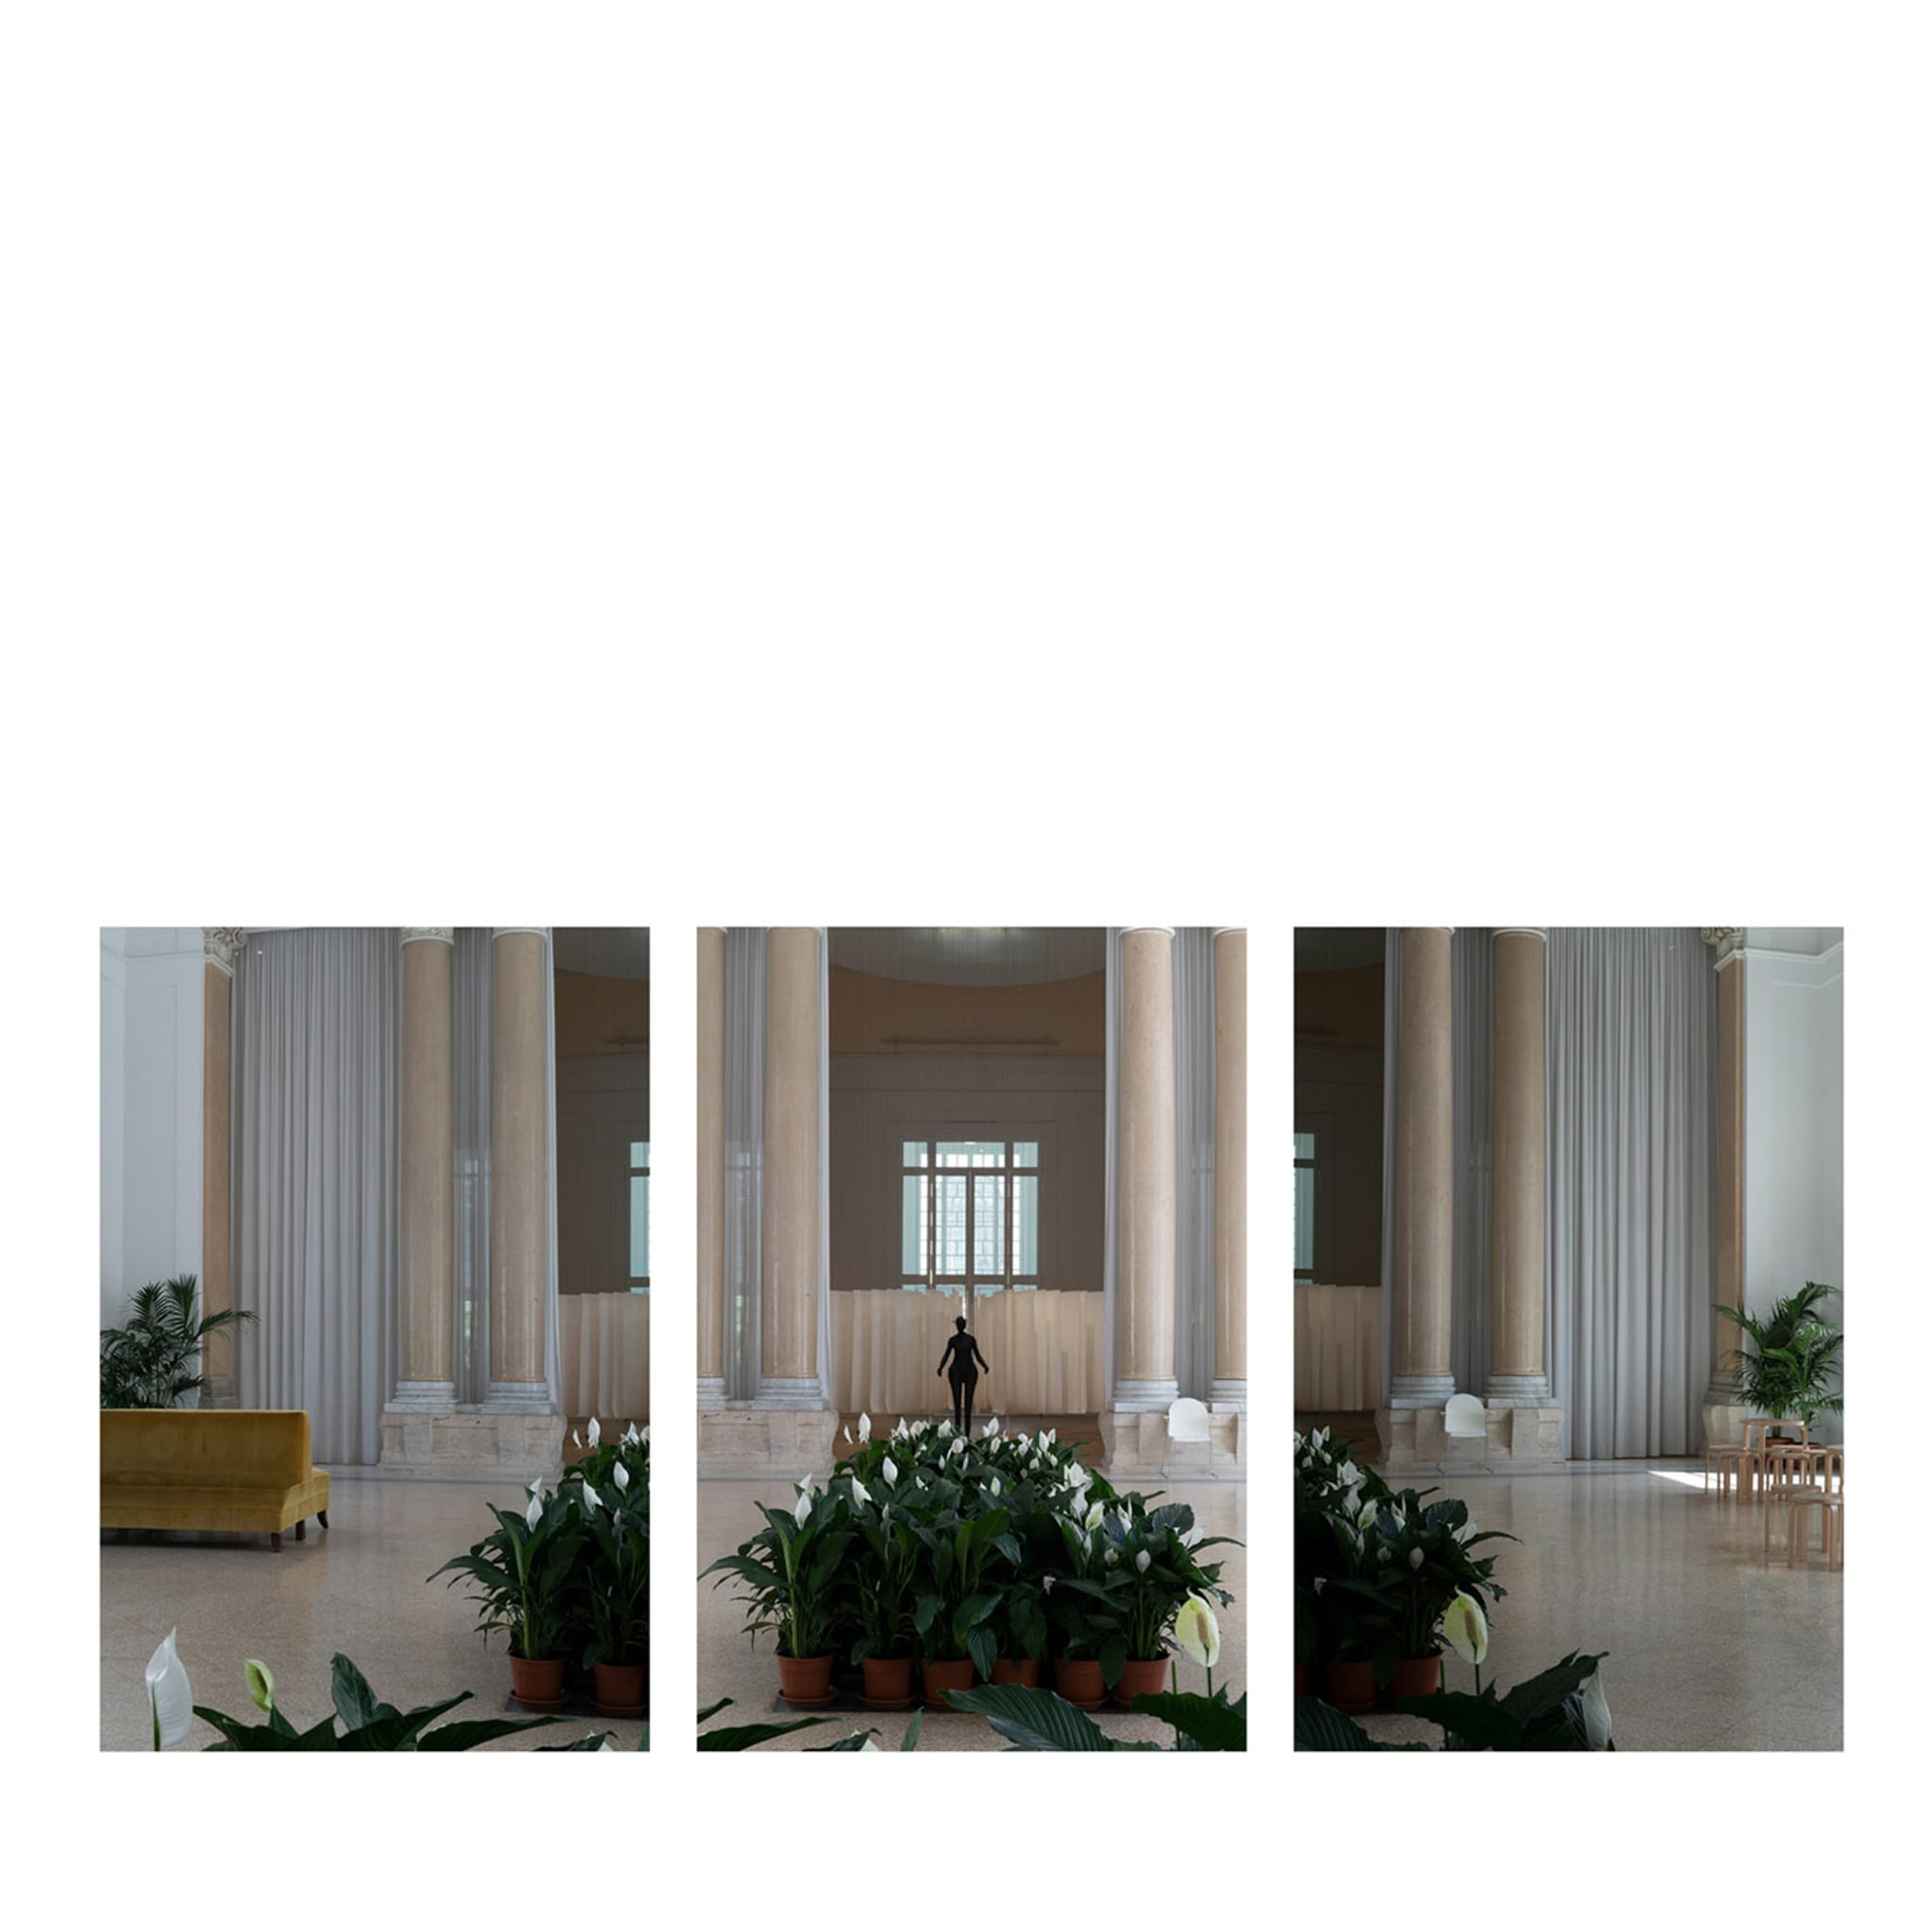 La Galleria Triptych Photograph - Main view